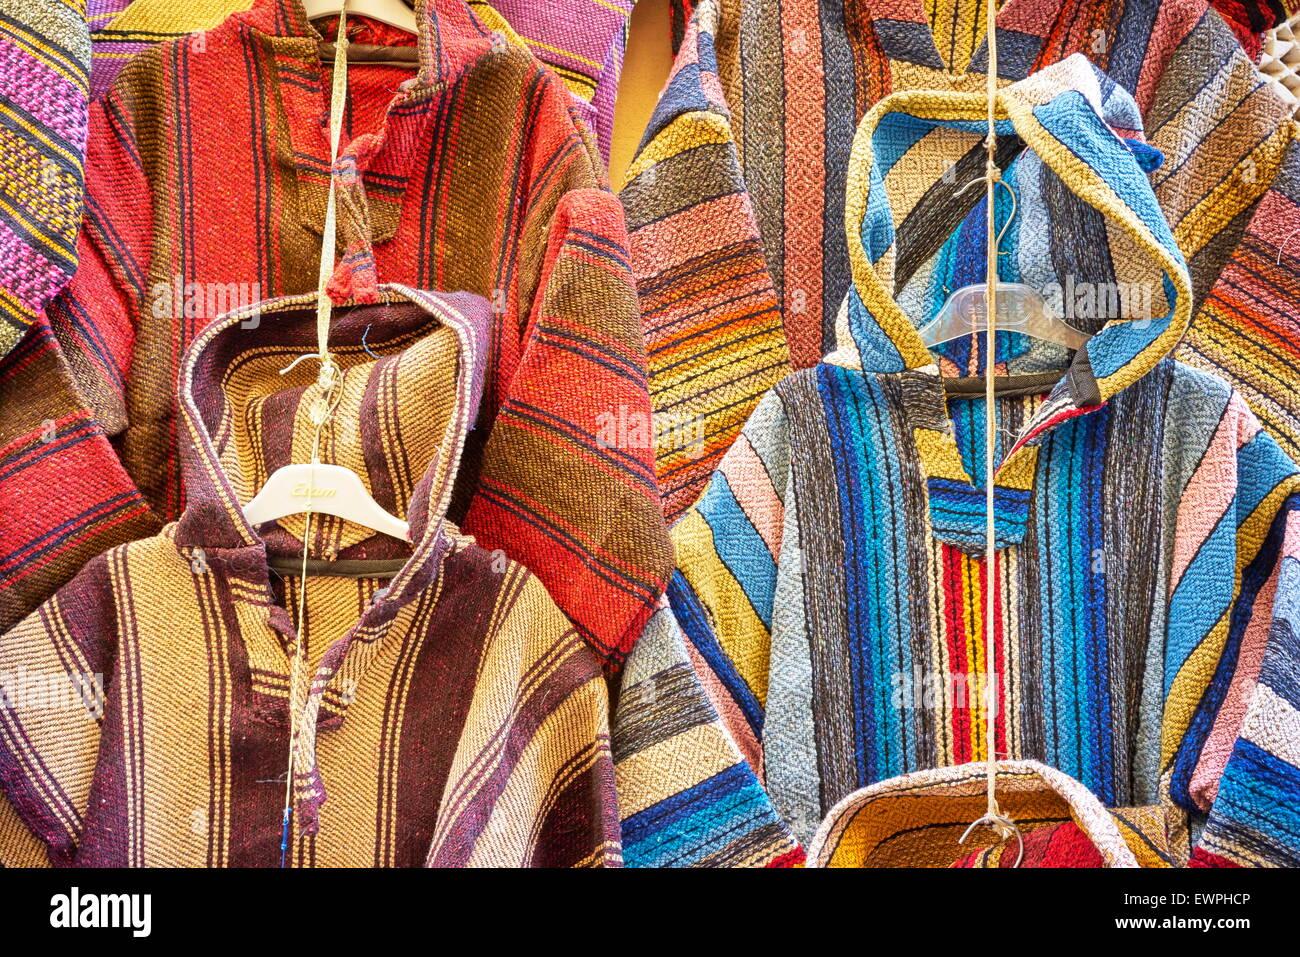 Tienda de ropa. Lana djellabas Bereber, la vestimenta tradicional marroquí. Marruecos Foto de stock